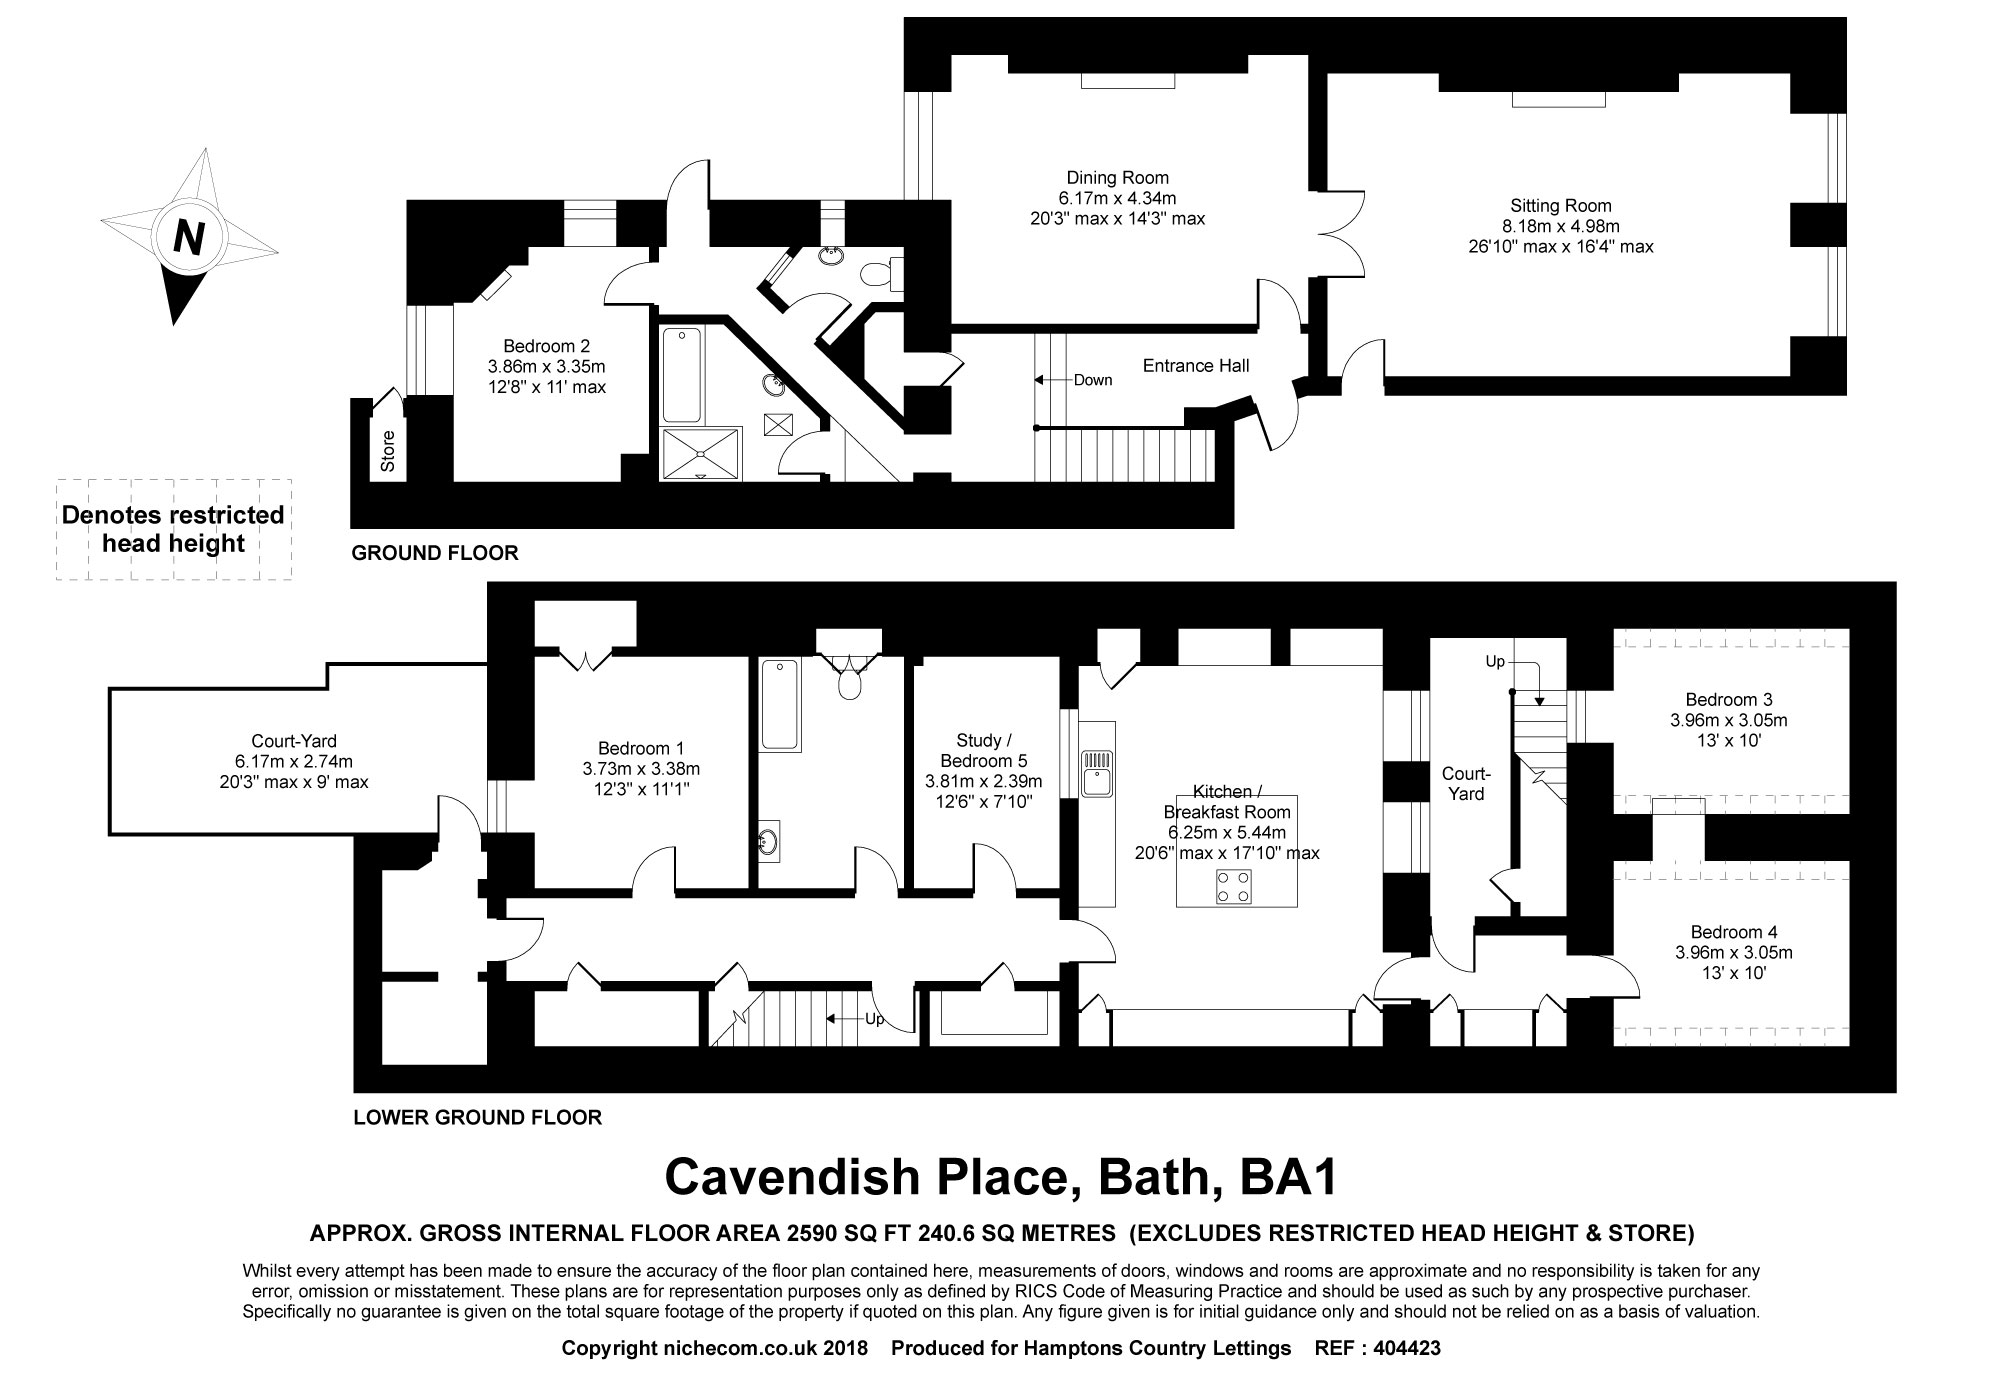 4 Bedrooms Maisonette to rent in Cavendish Place, Bath BA1